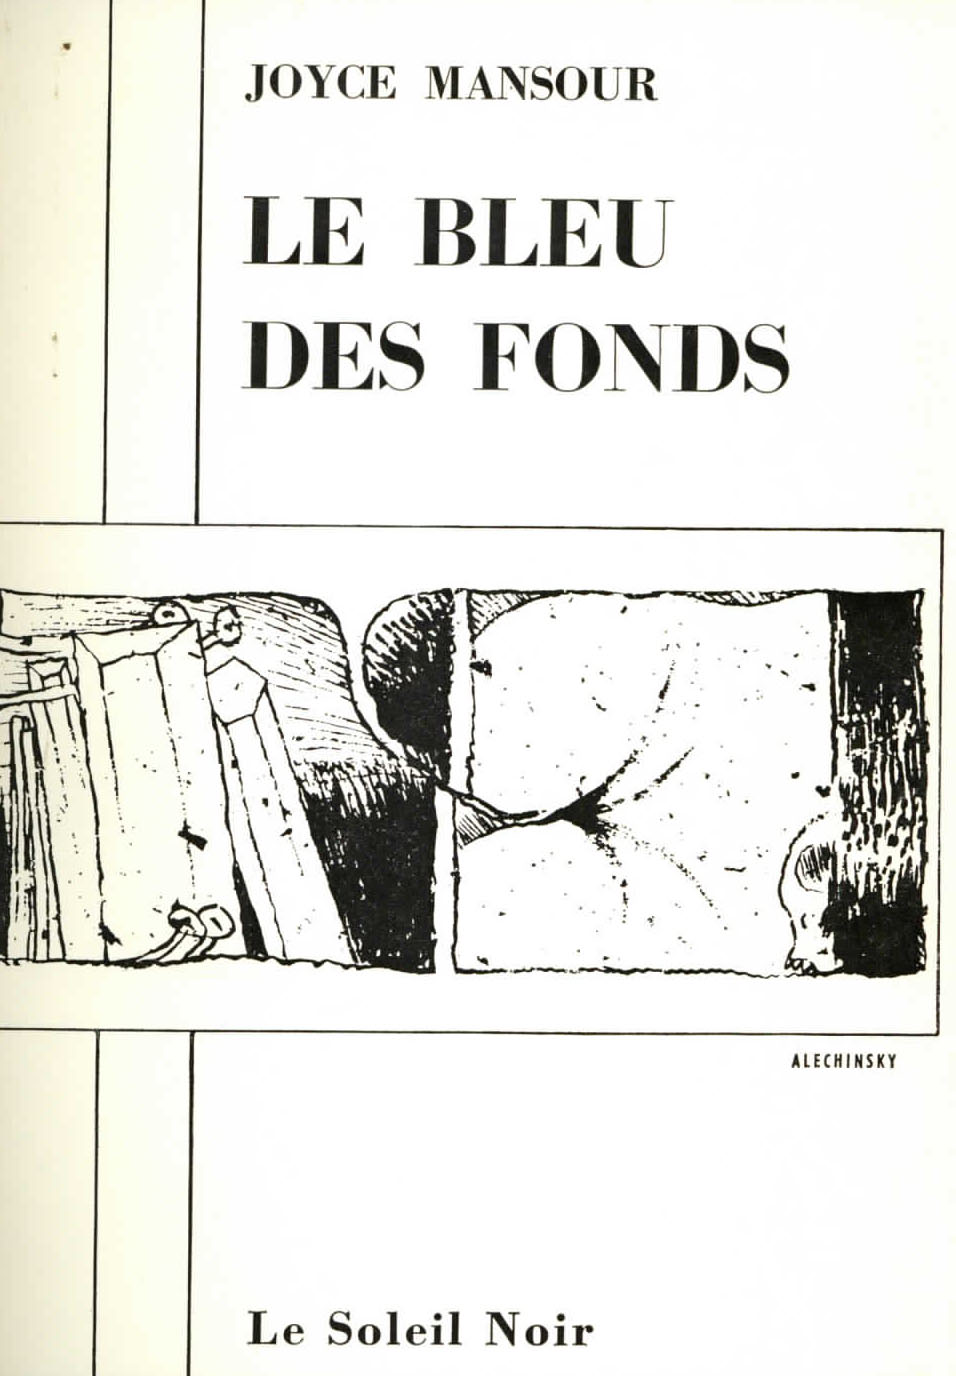 Joyce Mansour, <br /><em>Le Bleu des fonds</em>, 1968